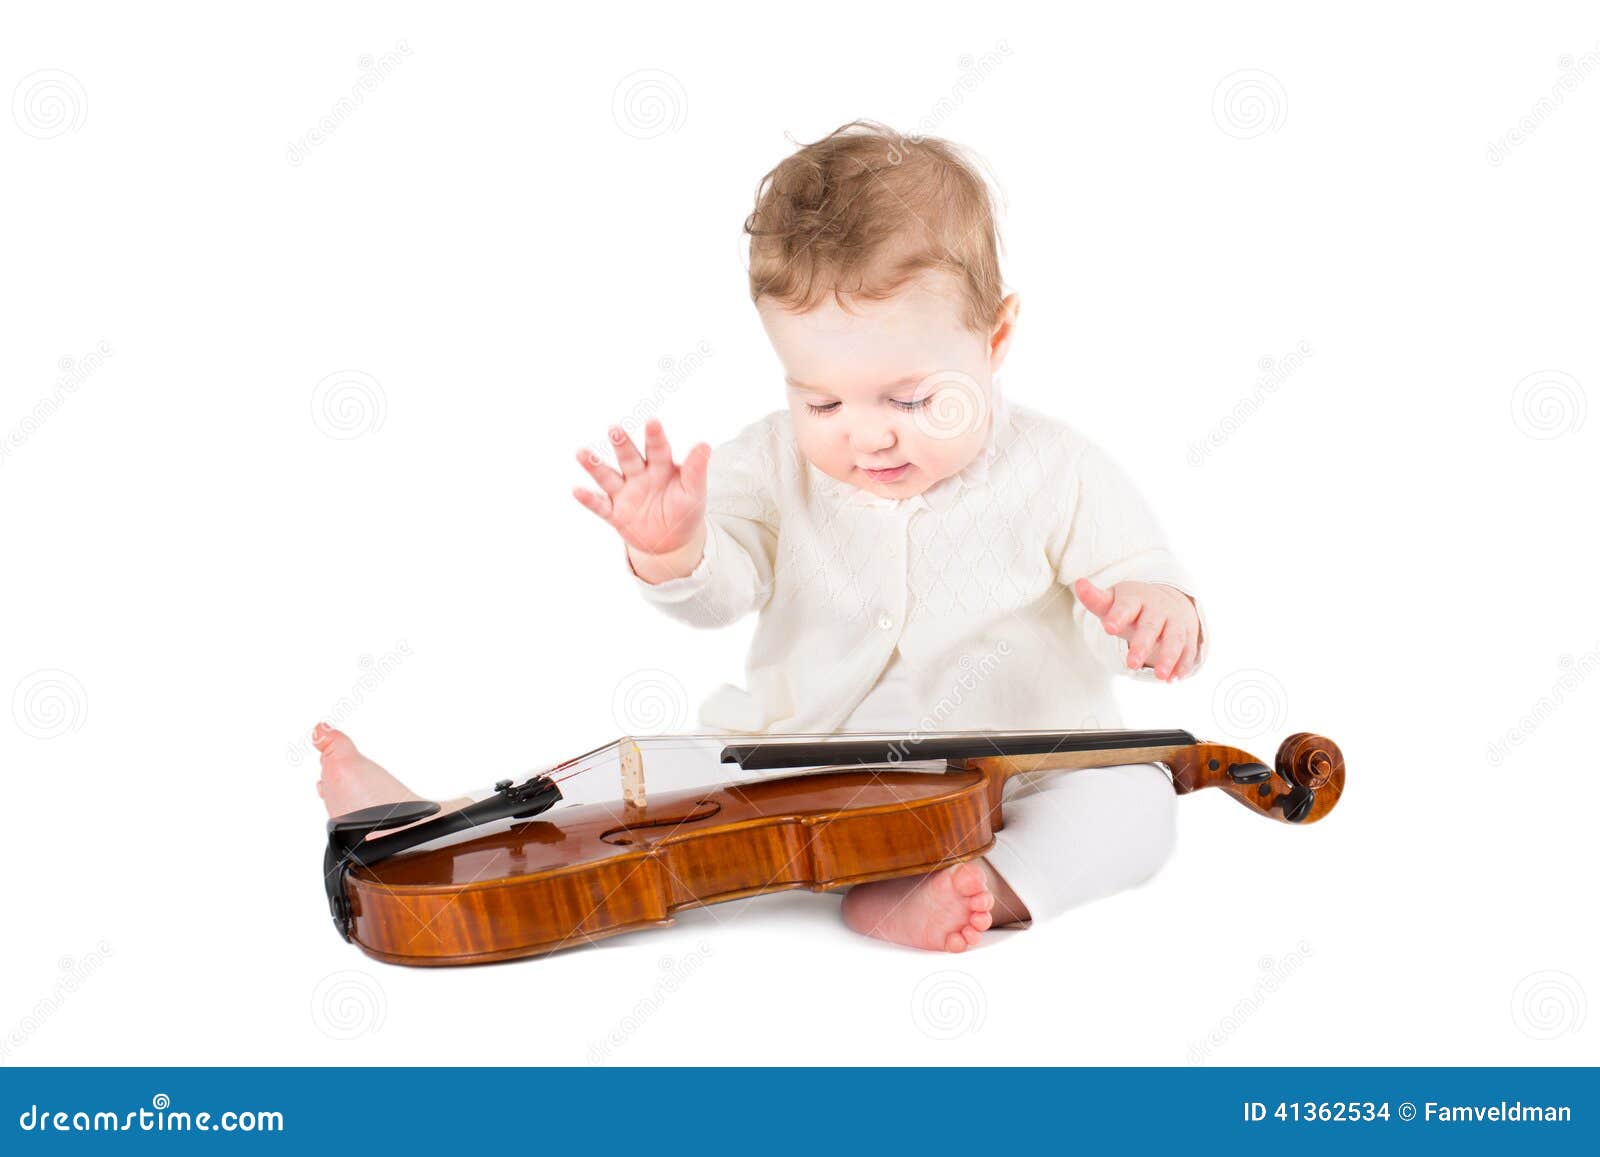 Старший брат скрипки. Скрипка для детей. Мальчик со скрипкой. Ребенок играет на скрипке. Дети играют на музыкальных инструментах.